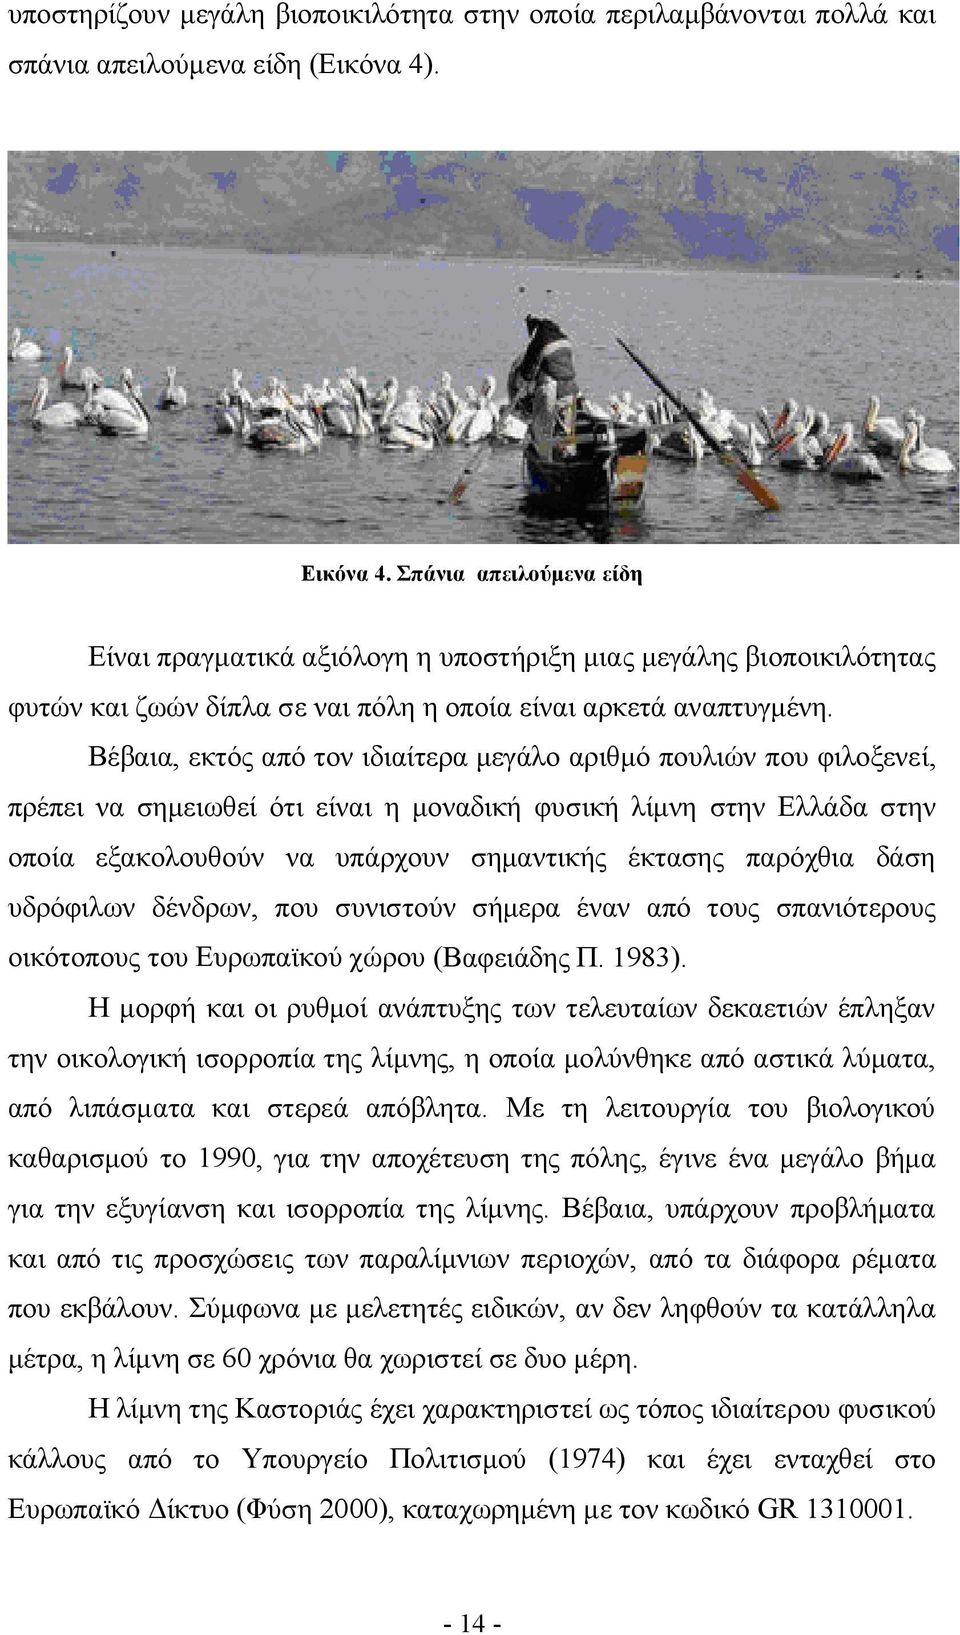 Βέβαια, εκτός από τον ιδιαίτερα μεγάλο αριθμό πουλιών που φιλοξενεί, πρέπει να σημειωθεί ότι είναι η μοναδική φυσική λίμνη στην Ελλάδα στην οποία εξακολουθούν να υπάρχουν σημαντικής έκτασης παρόχθια